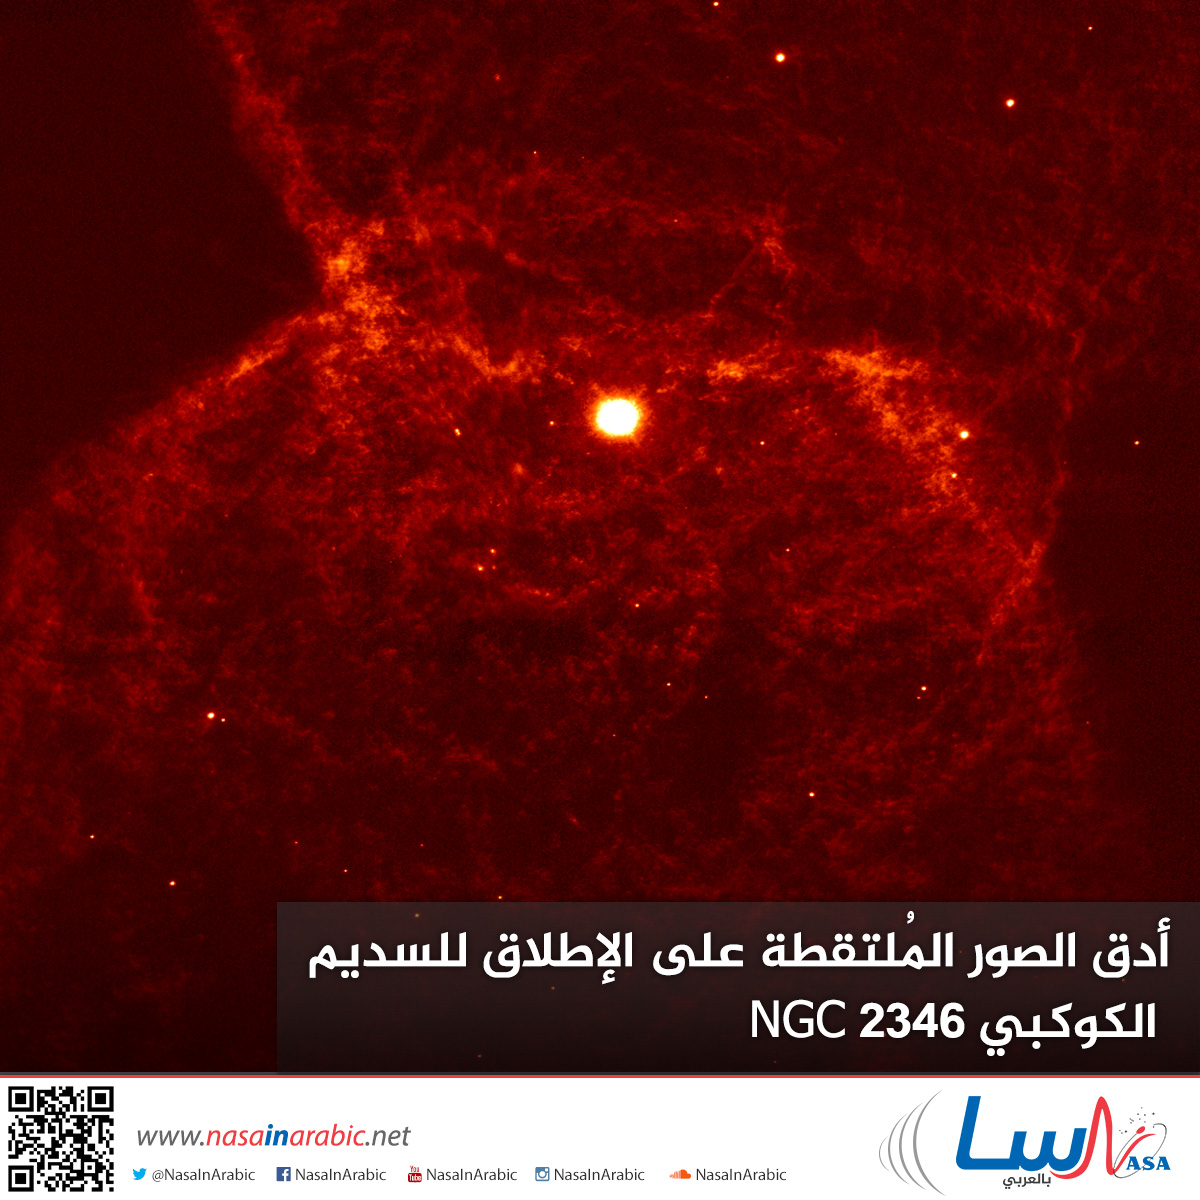 أدق الصور المُلتقطة على الإطلاق للسديم الكوكبي NGC 2346